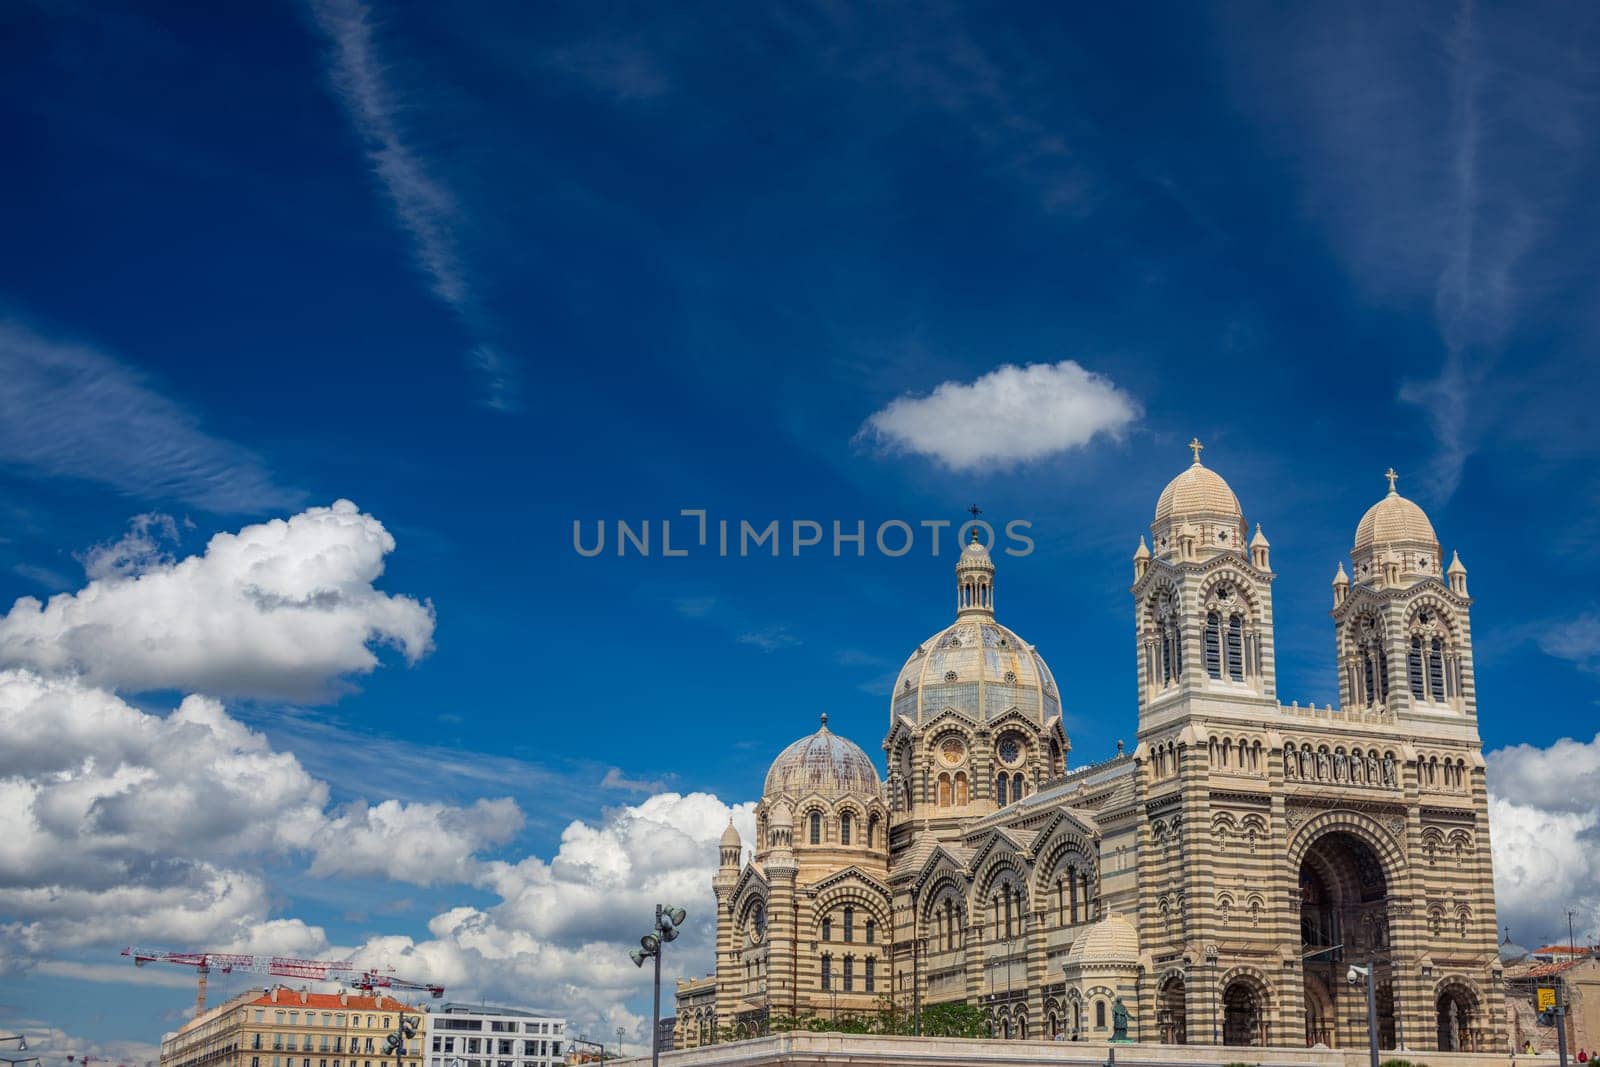 Cathedral de la Major in Marseille, France by vladispas